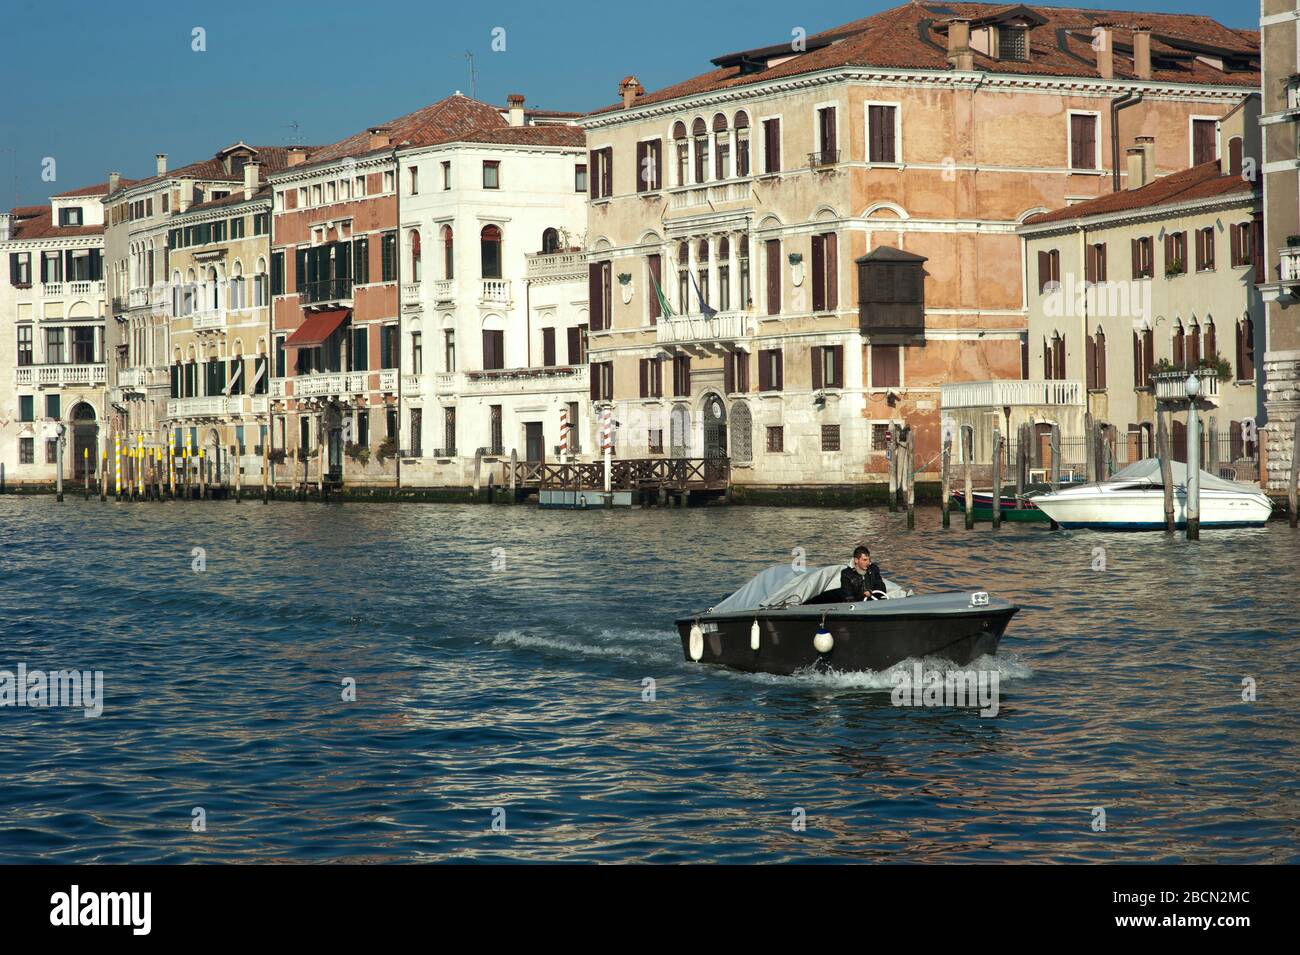 Boat, Grand Canal, Venice, Italy Stock Photo